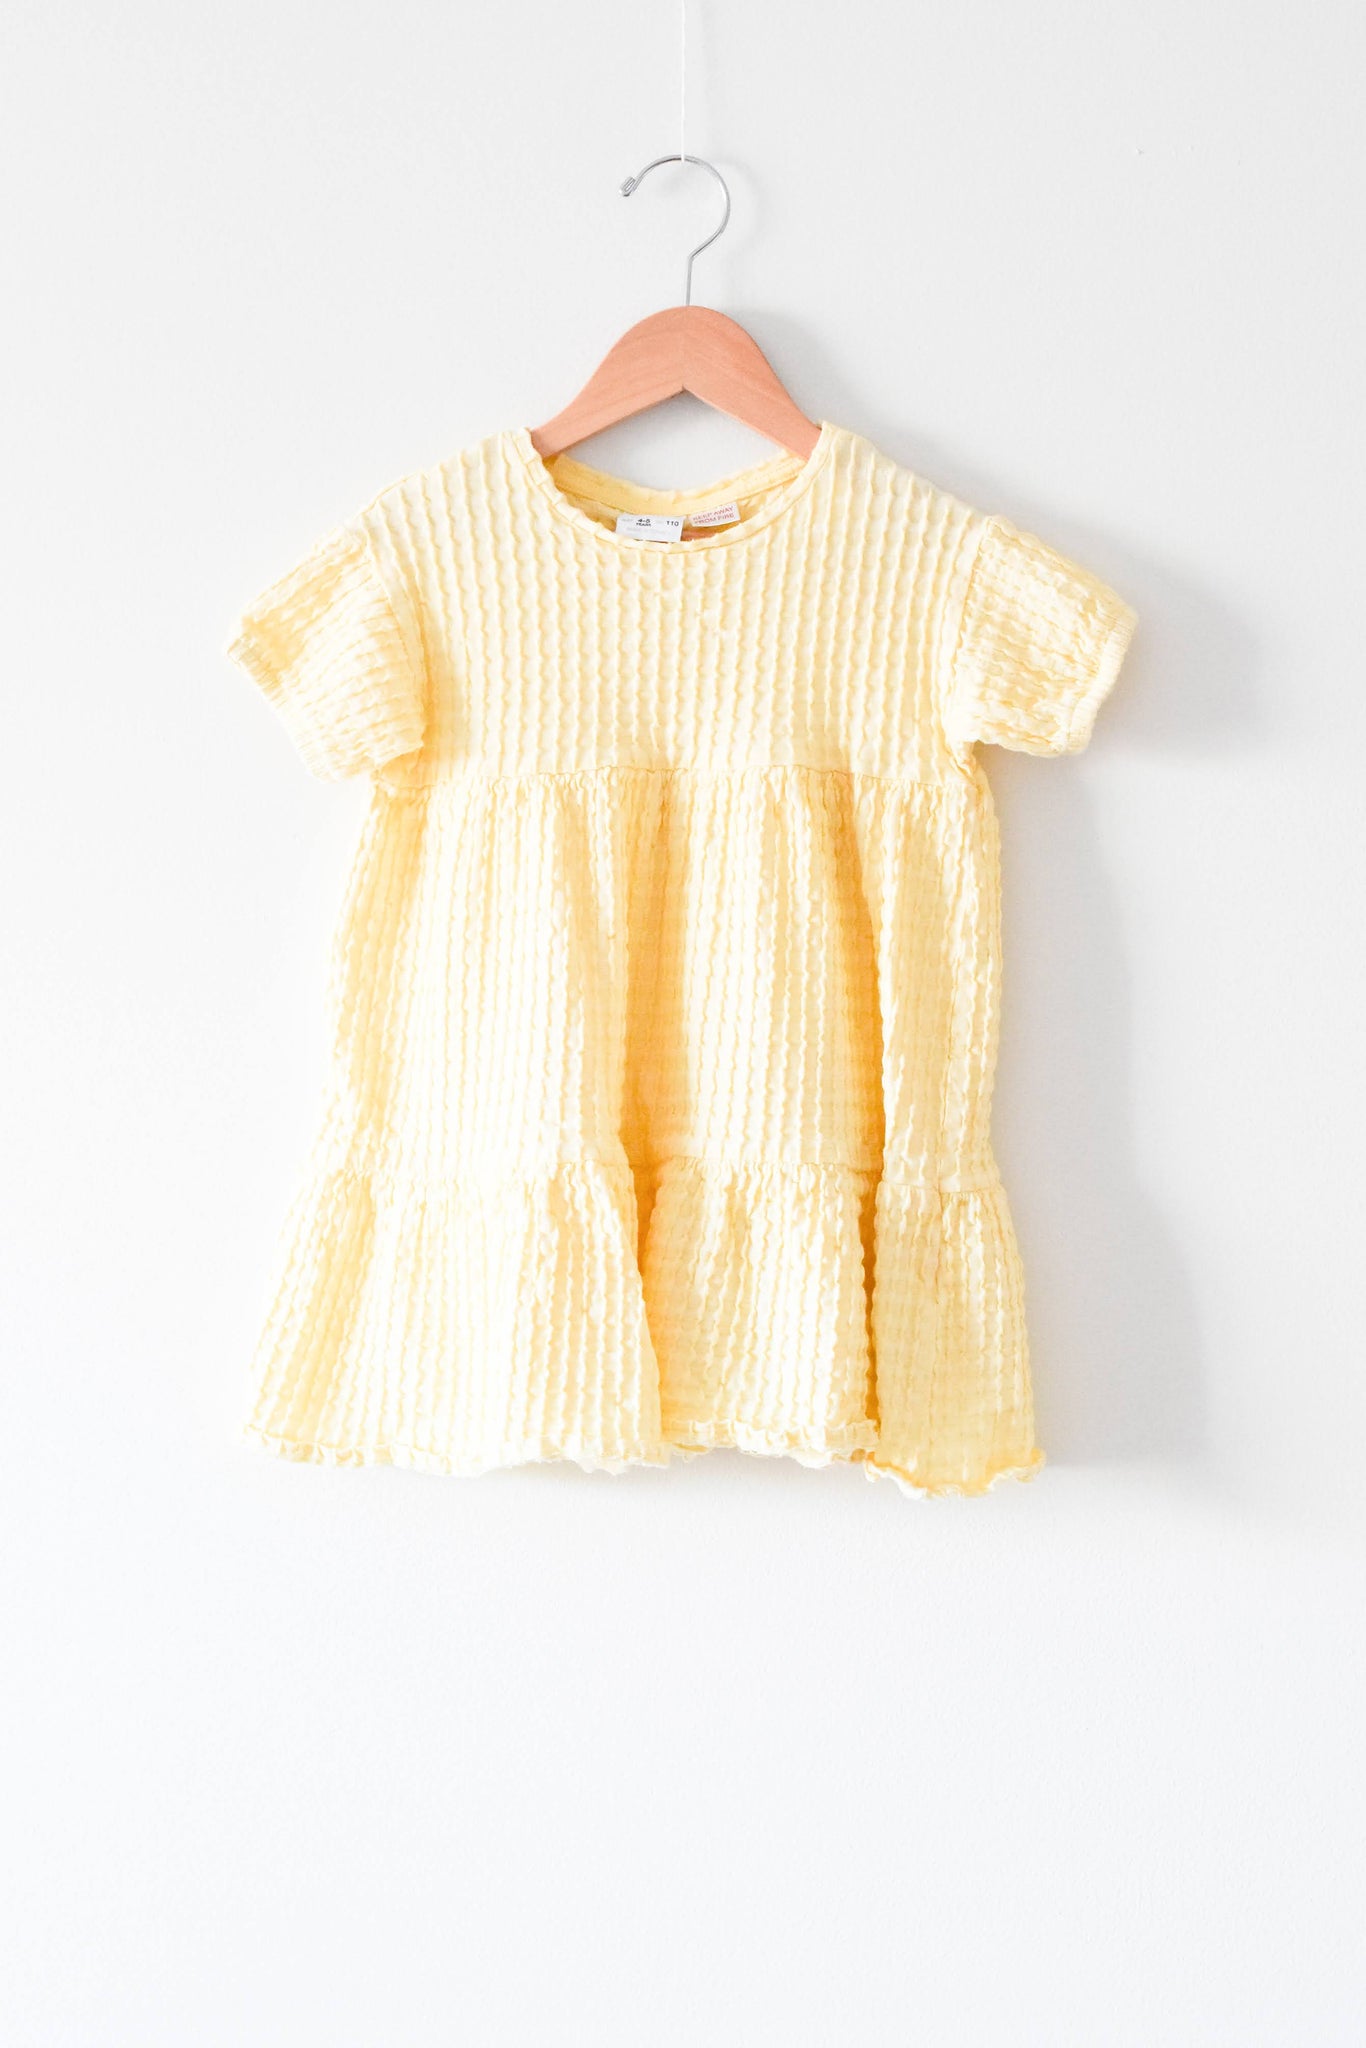 Zara Yellow Dress • 4-5 years